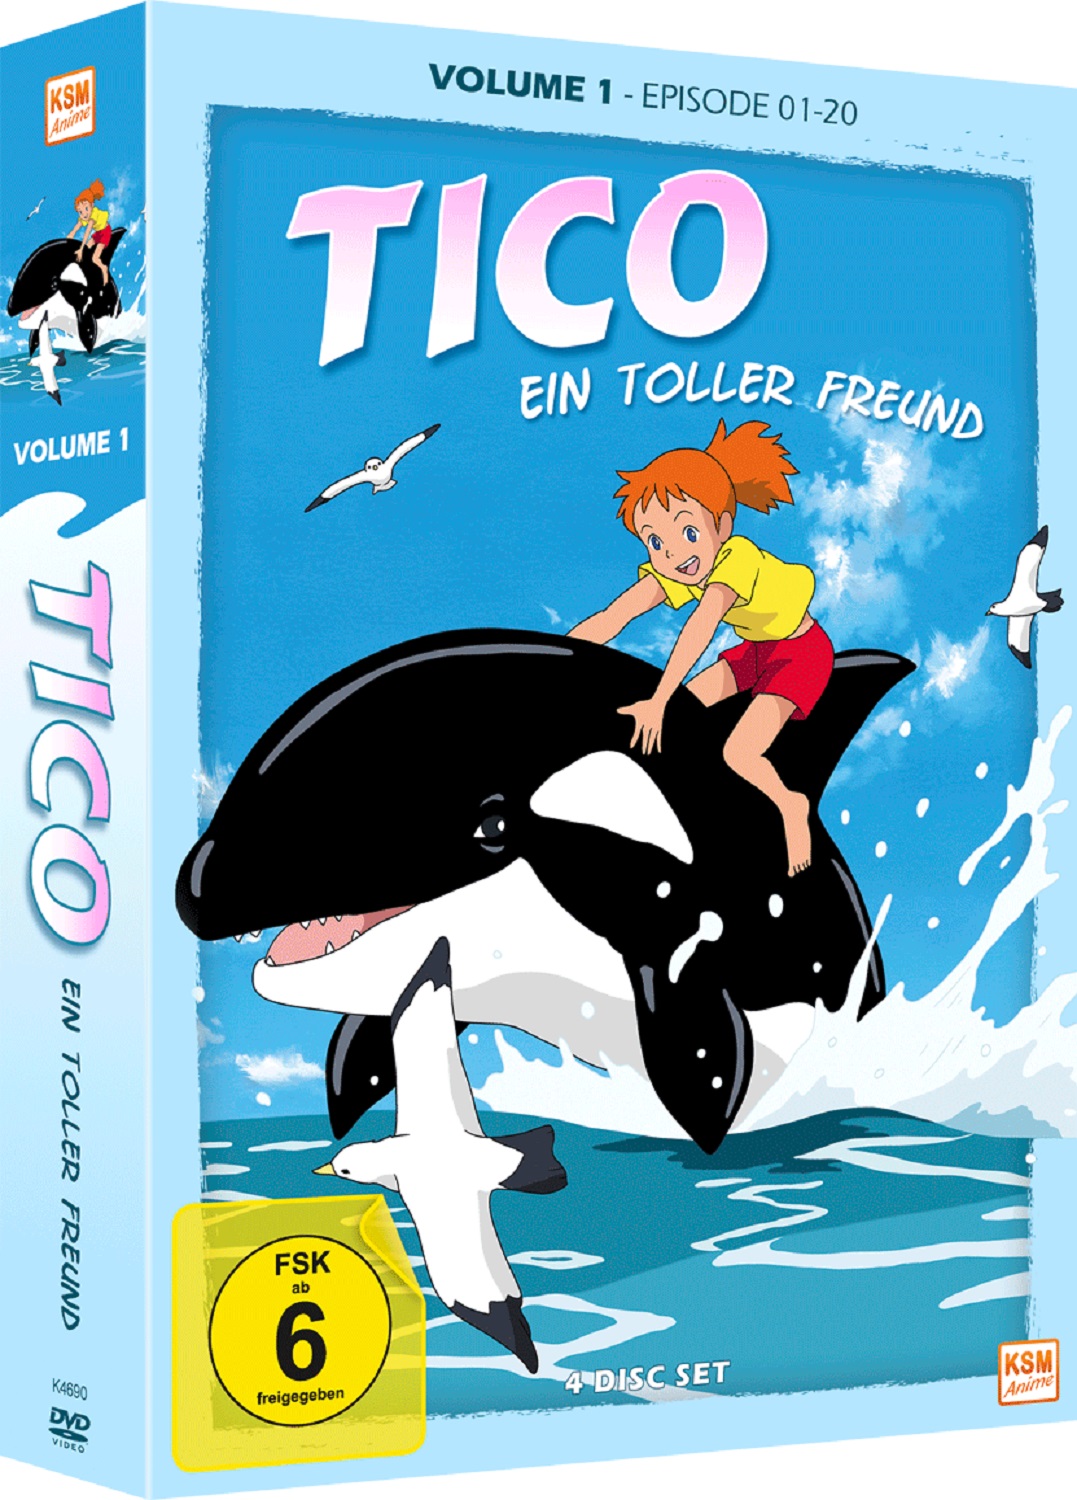 Tico - Ein Toller Freund - Volume 1: Episode 01-20 [DVD] Image 3